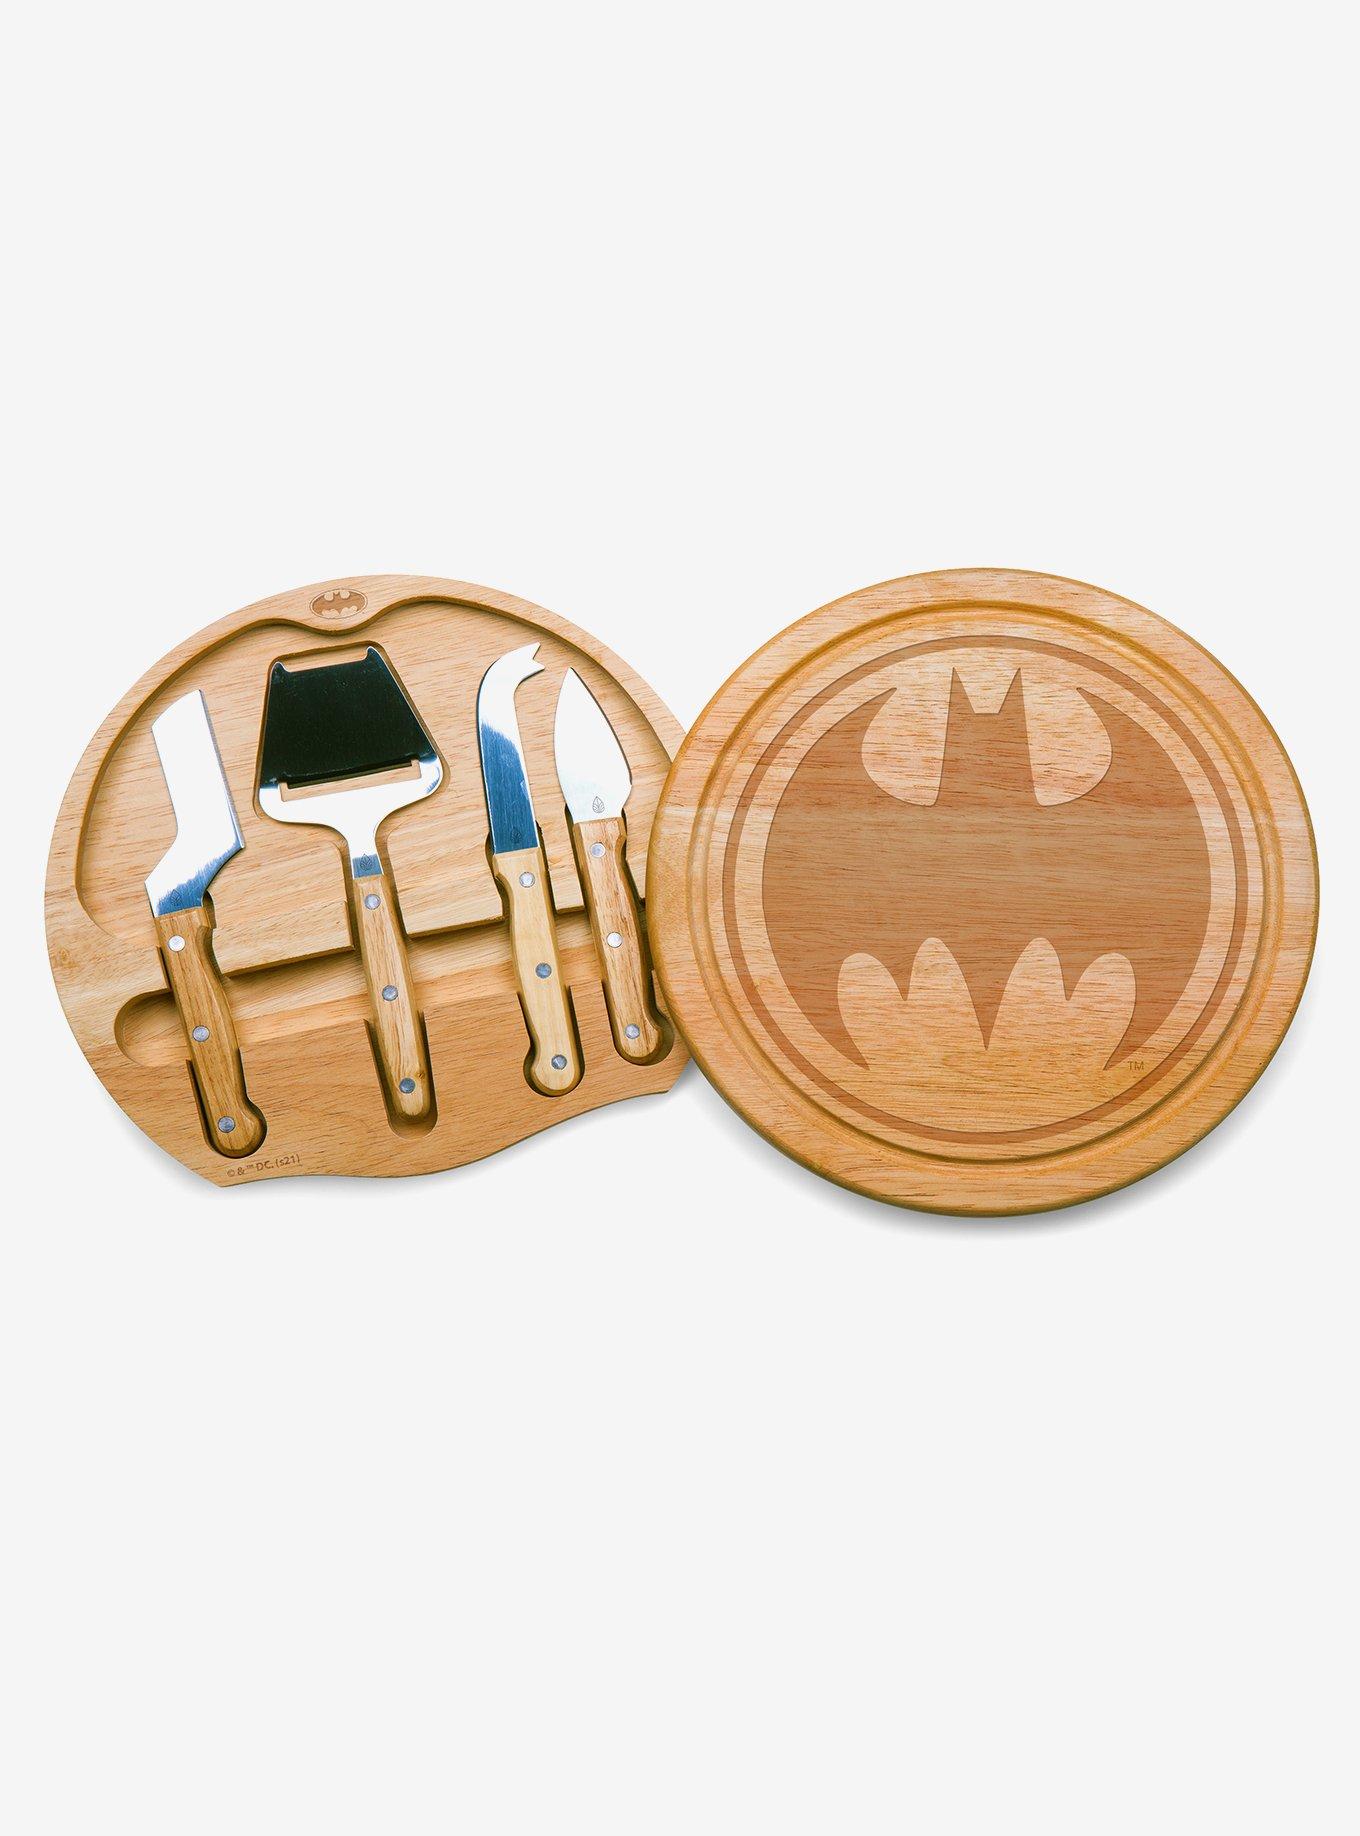 DC Comics Batman Circo Cheese Cutting Board & Tools Set, , hi-res